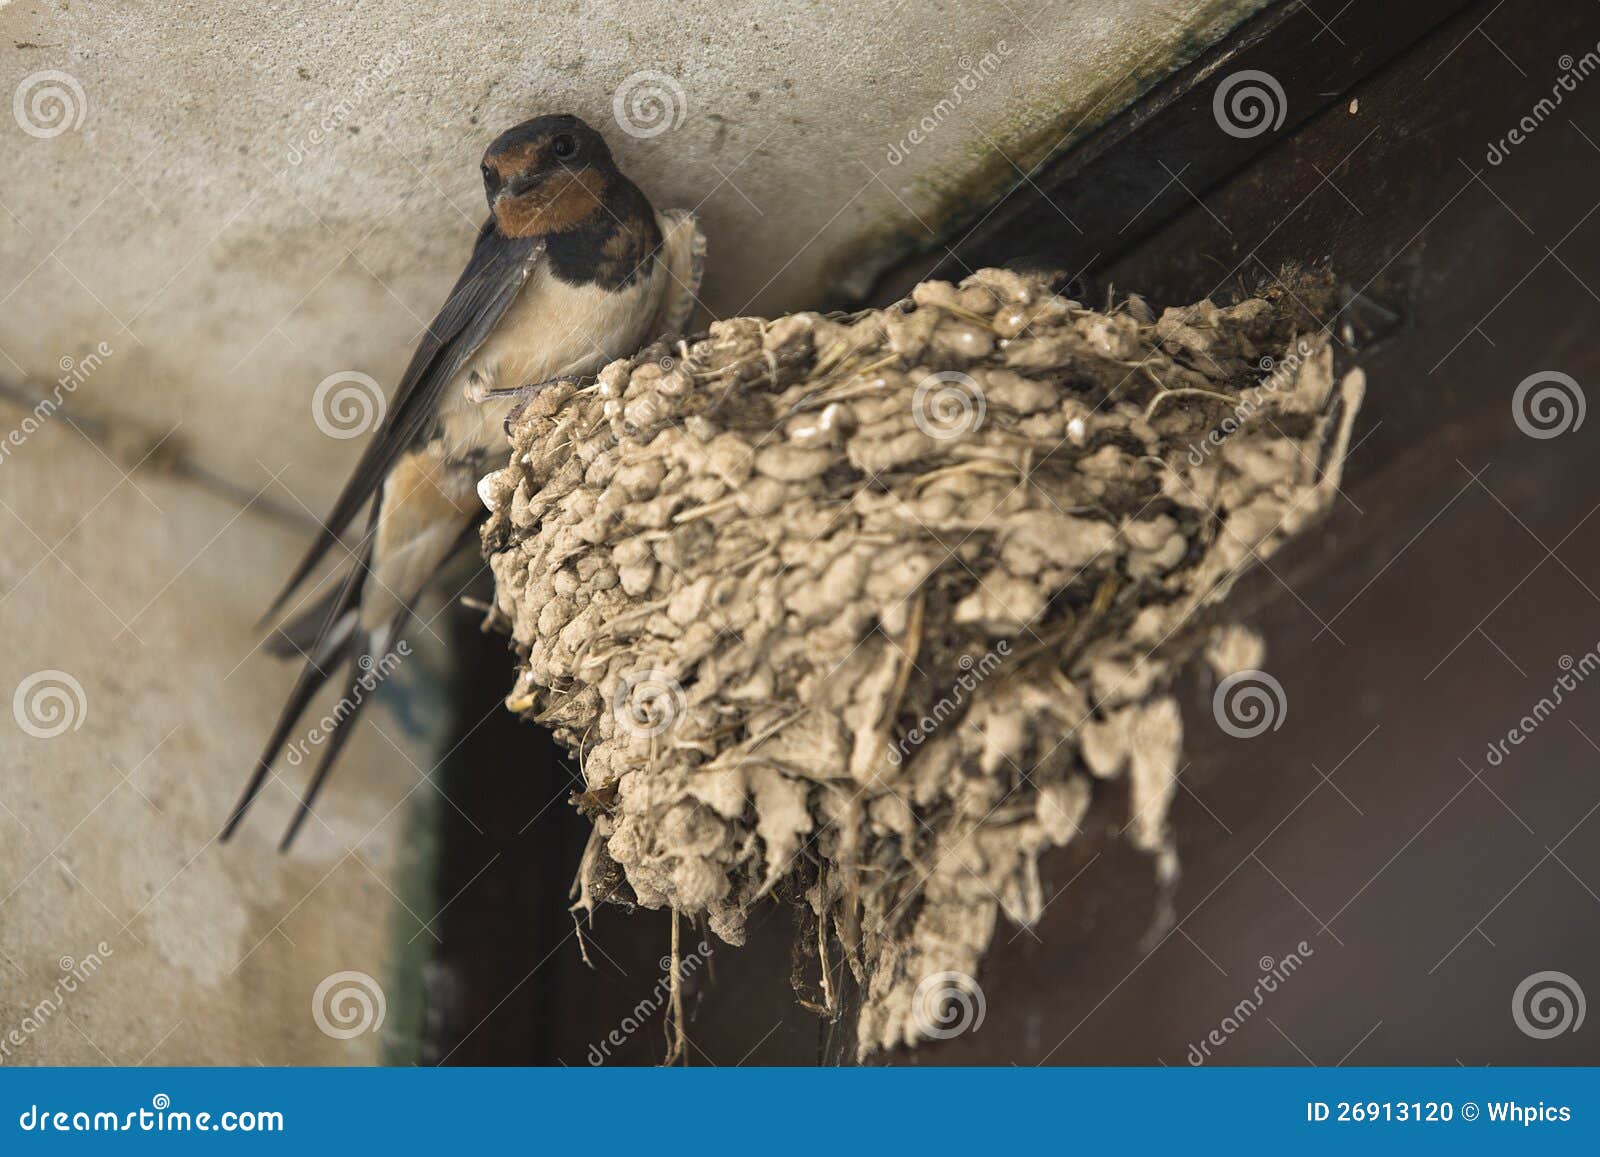 Под крышей дома свили гнездо. Гнездо ласточки береговушки. Гнездо ласточки под крышей. Ласточка птица гнездо. Ласточкино гнездо птицы.